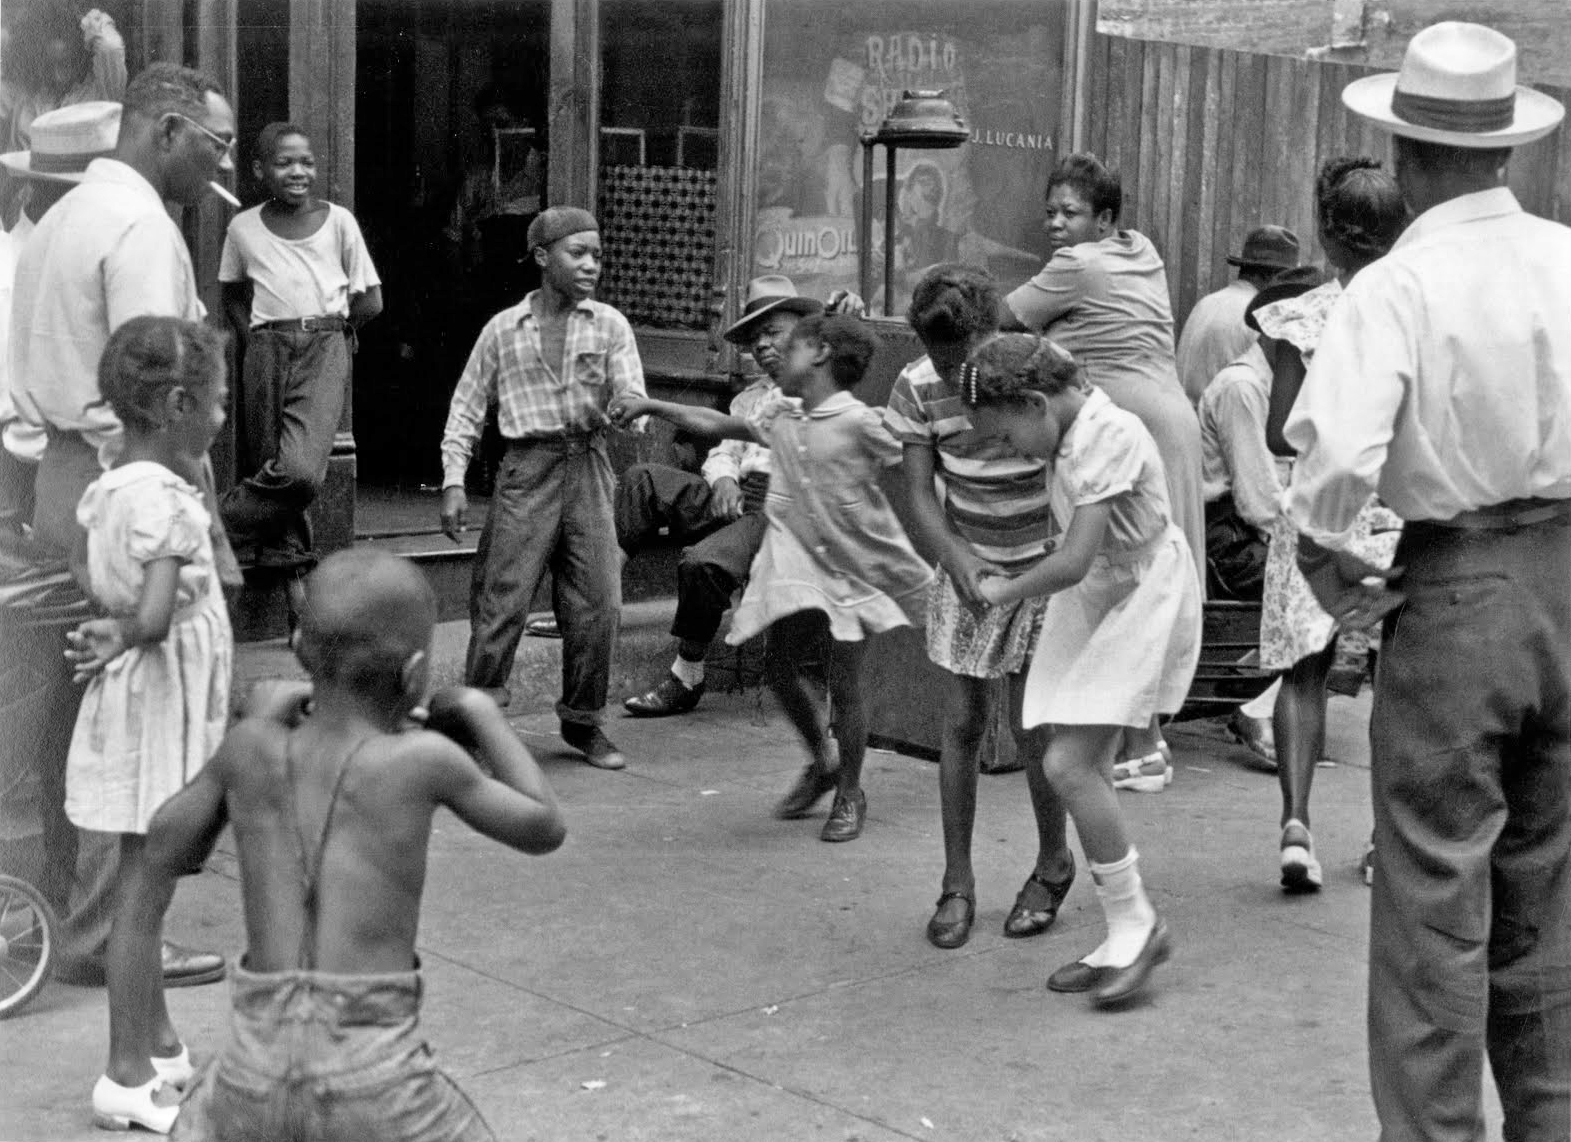 Children dancing in the street in 1947.